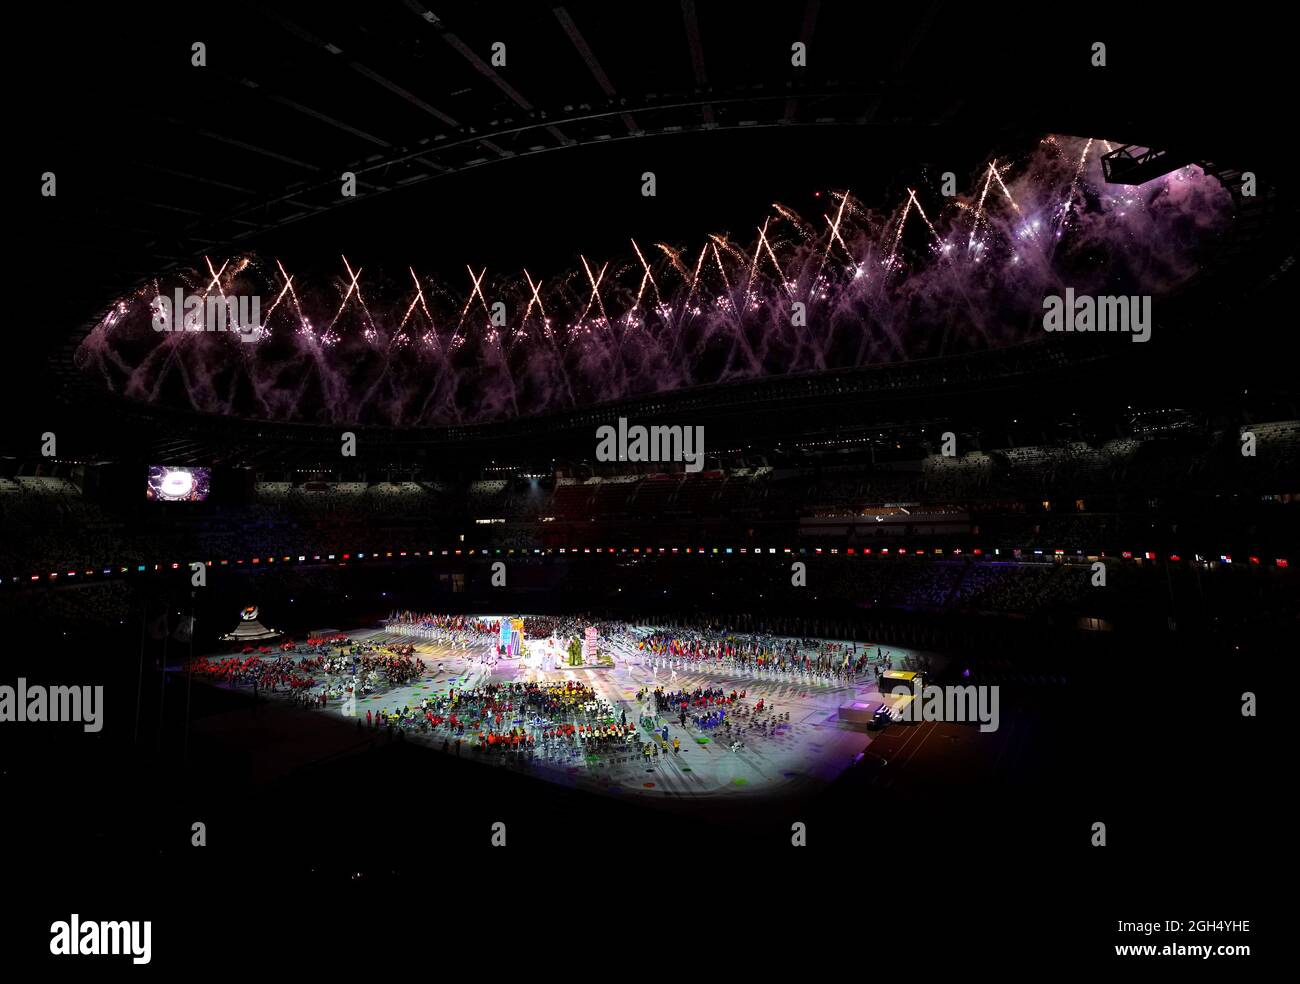 Das Feuerwerk explodiert während der Abschlussfeier der Paralympischen Spiele von Tokio 2020 im japanischen Olympiastadion. Bilddatum: Sonntag, 5. September 2021. Stockfoto